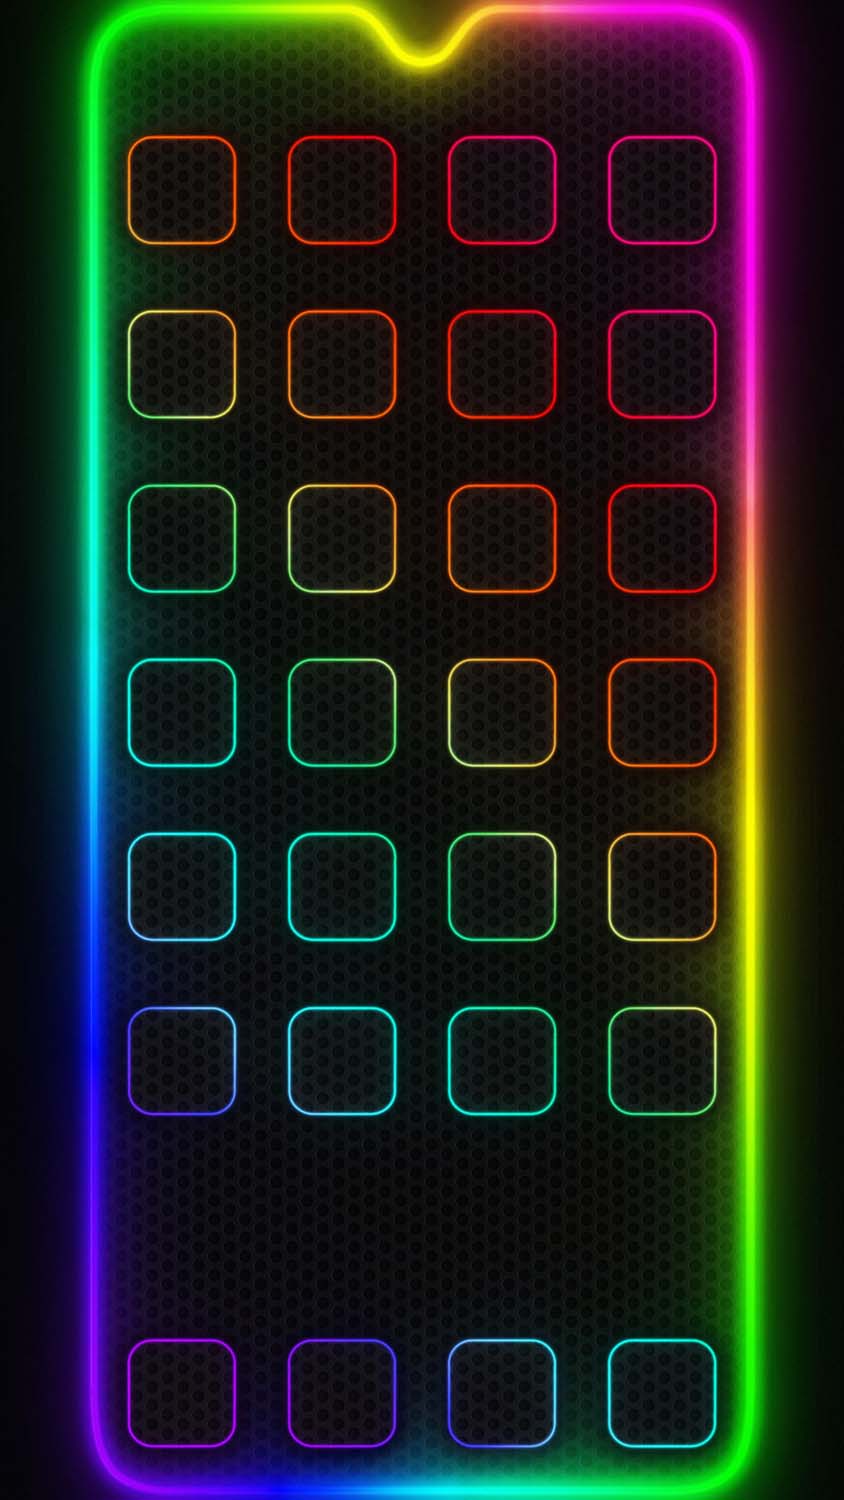 Neon App Dock Icons Wallpaper